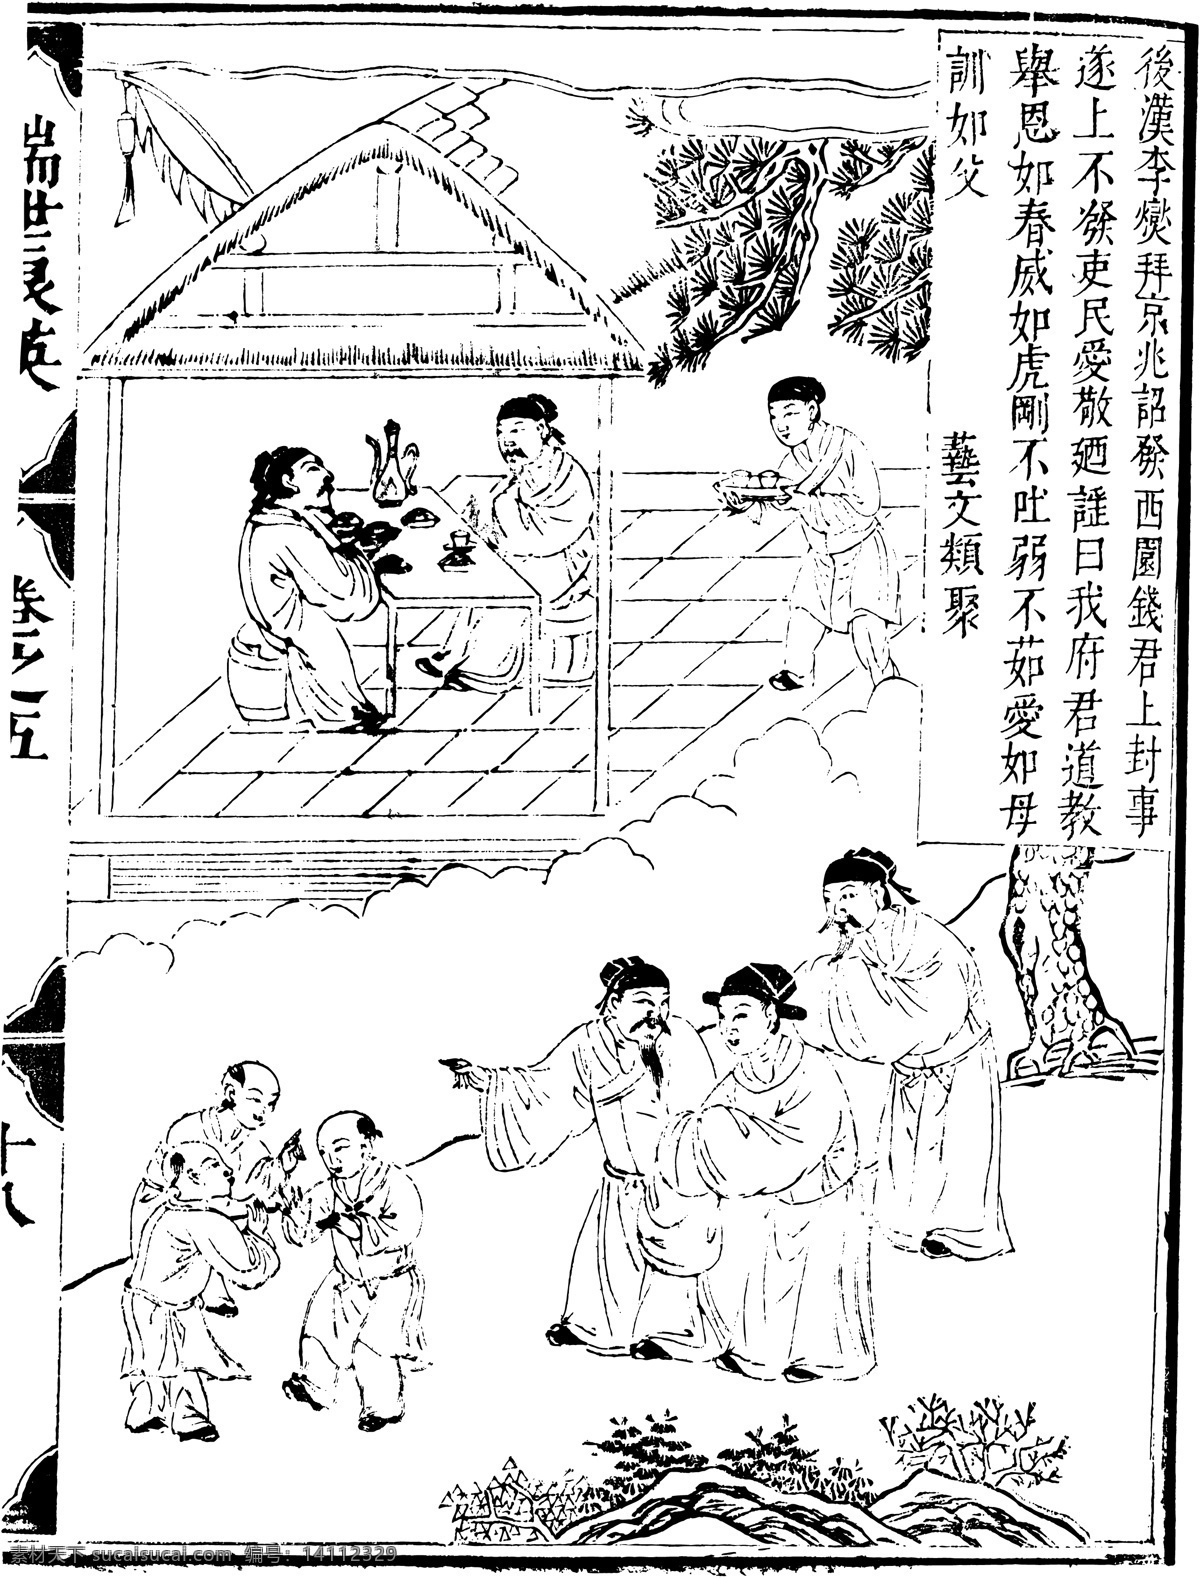 瑞世良英 木刻版画 中国 传统文化 61 中国传统文化 设计素材 版画世界 书画美术 白色